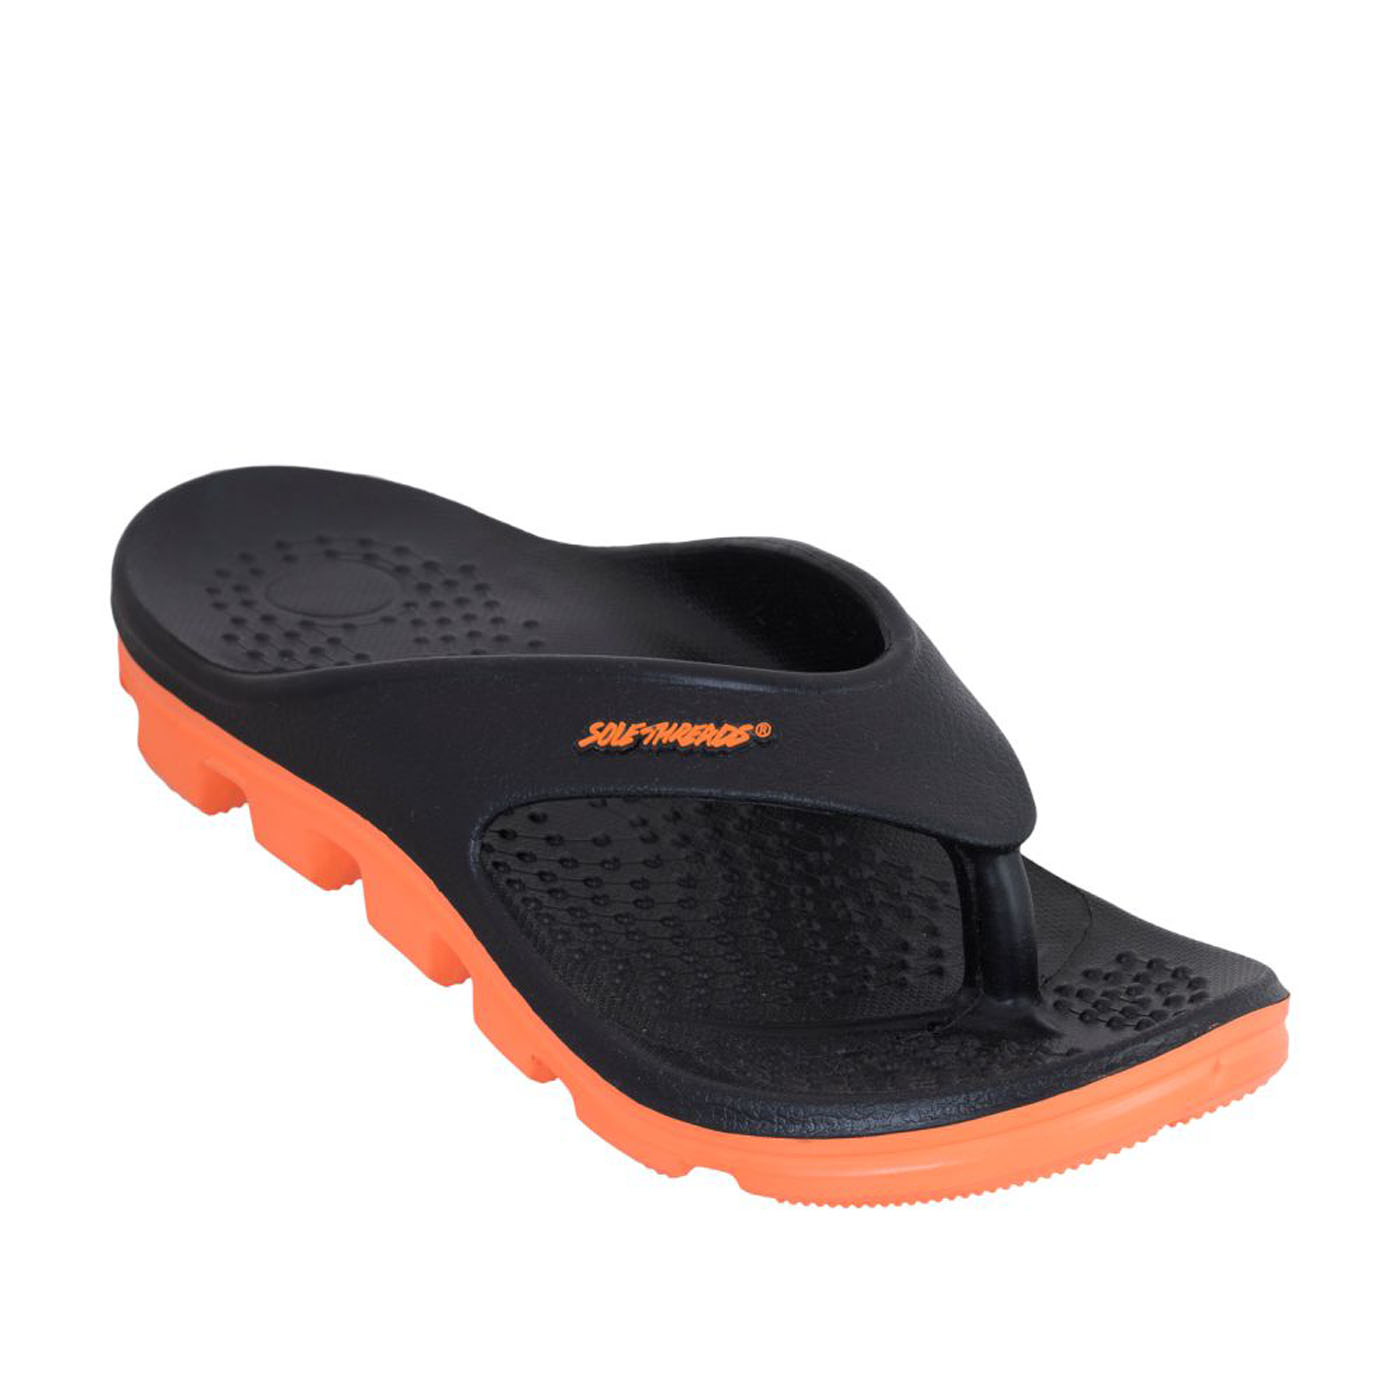 Buy Solethreads Black-Orange Color Slippers for Men Online @ ₹449 from ...